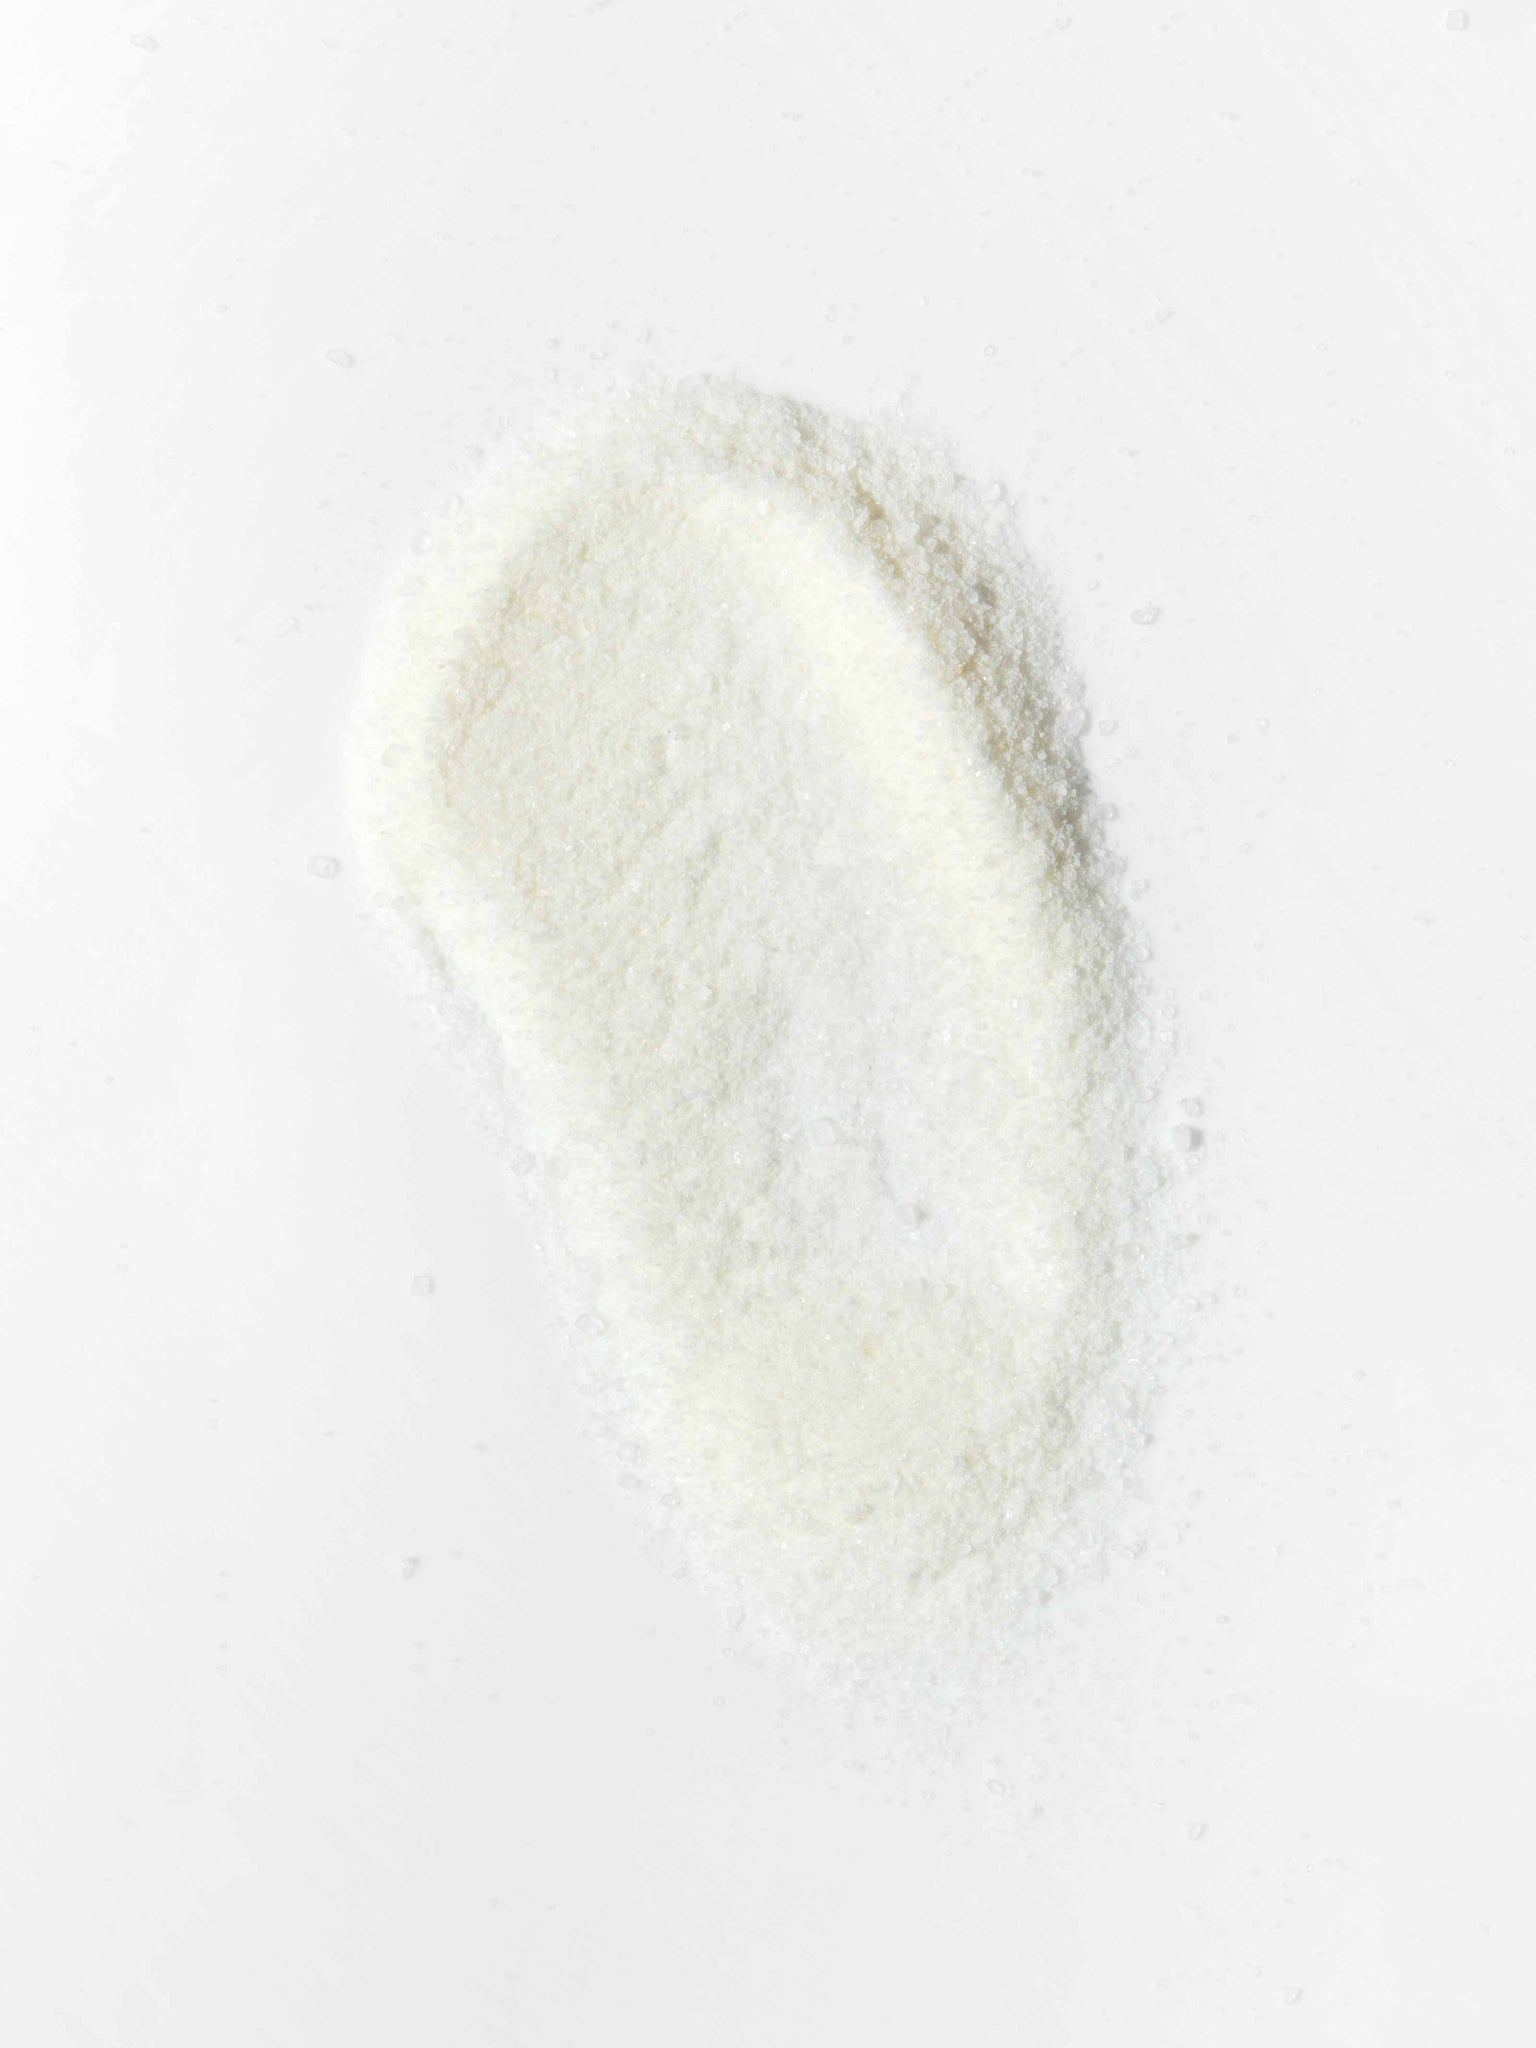 Alkali Salts